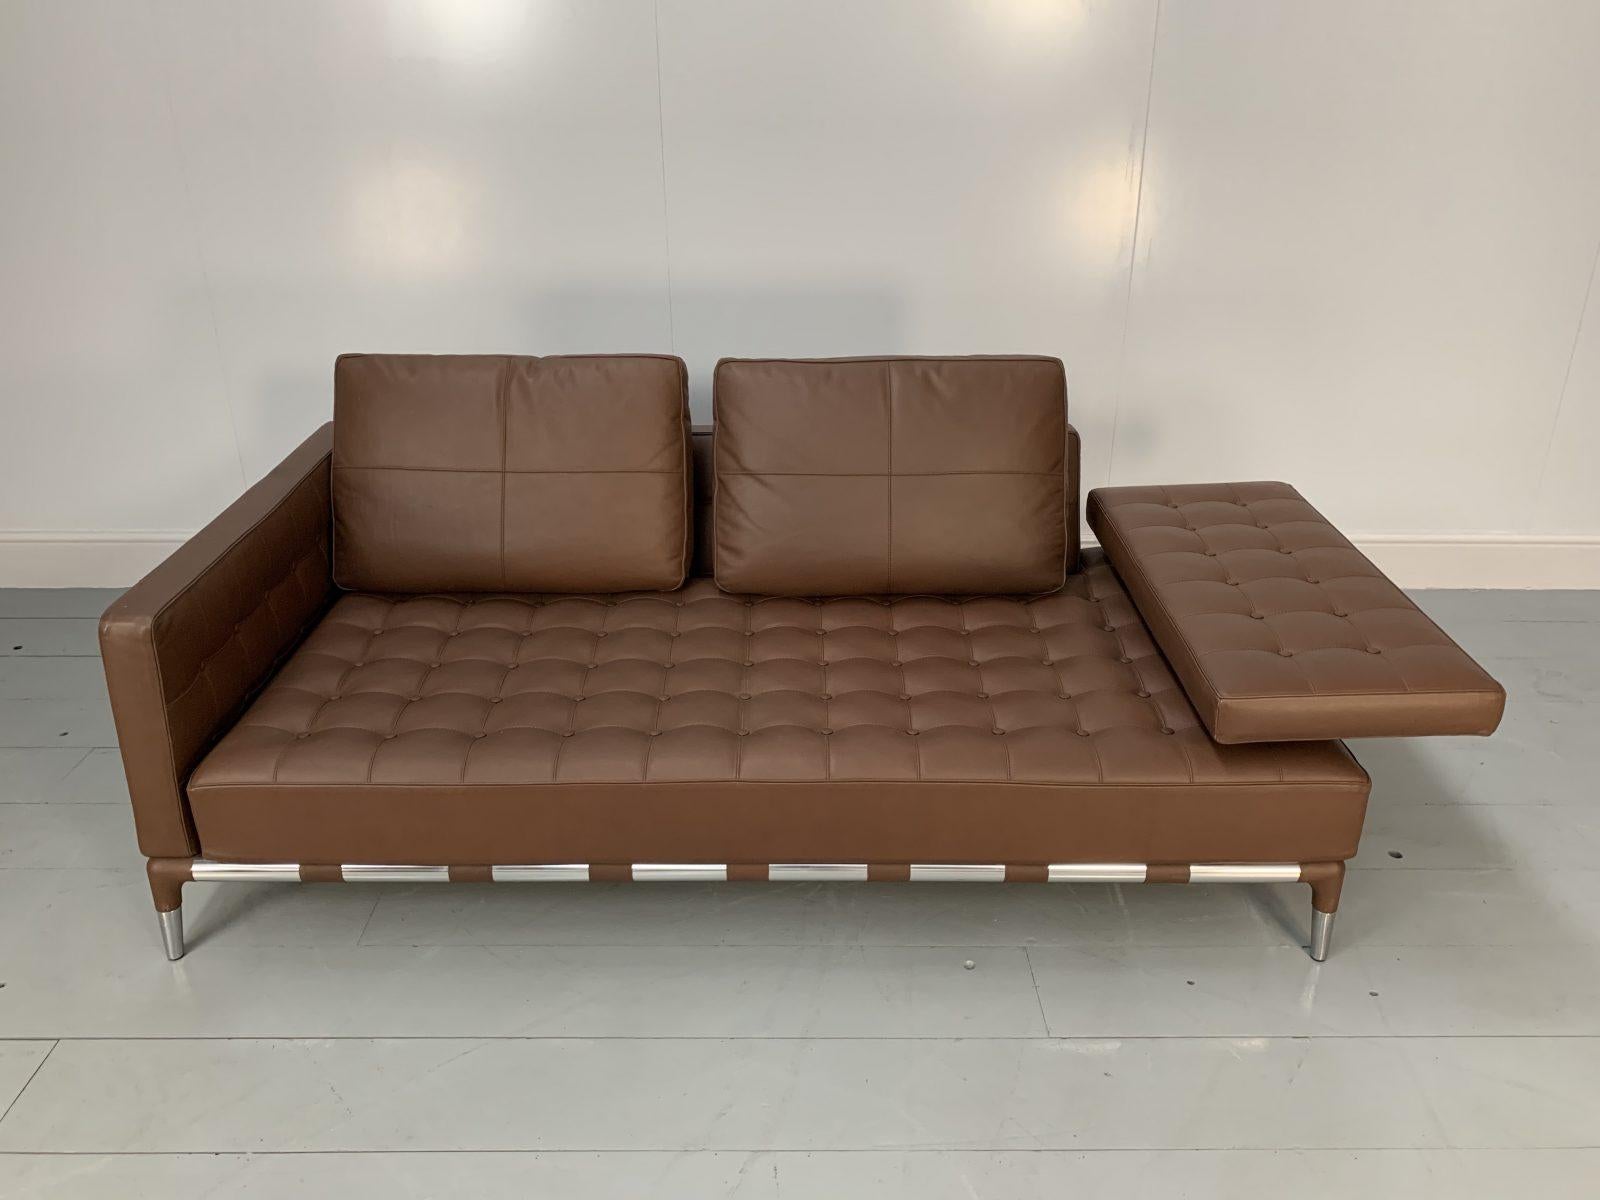 Cassina “241 Prive Divano” Sofa – in Mid-Brown “Pelle” Leather 2